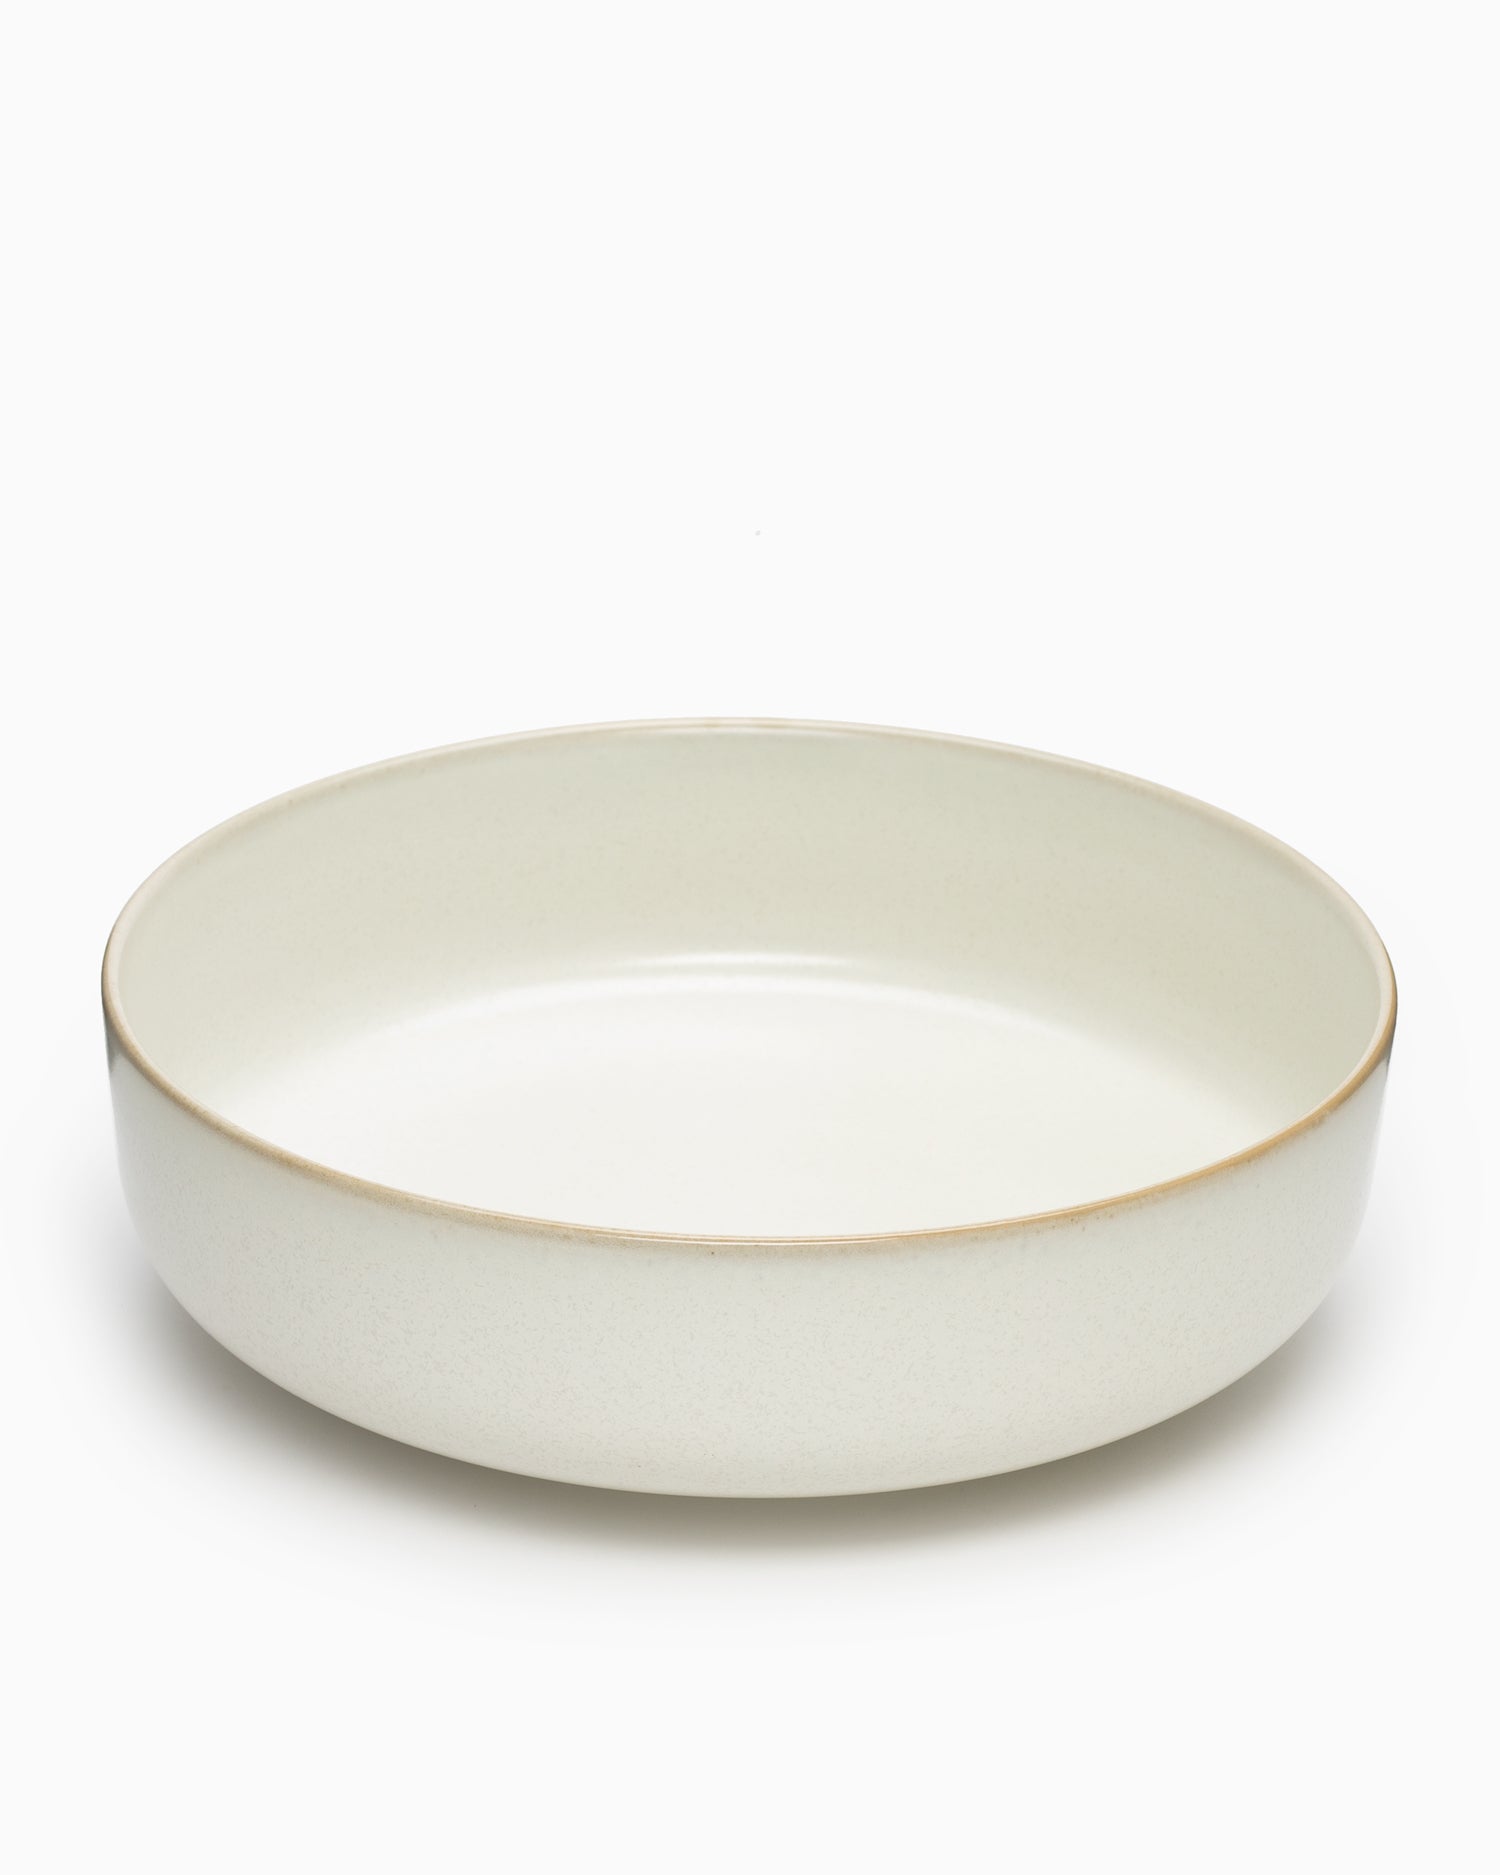 Sekki Bowl Large - Cream